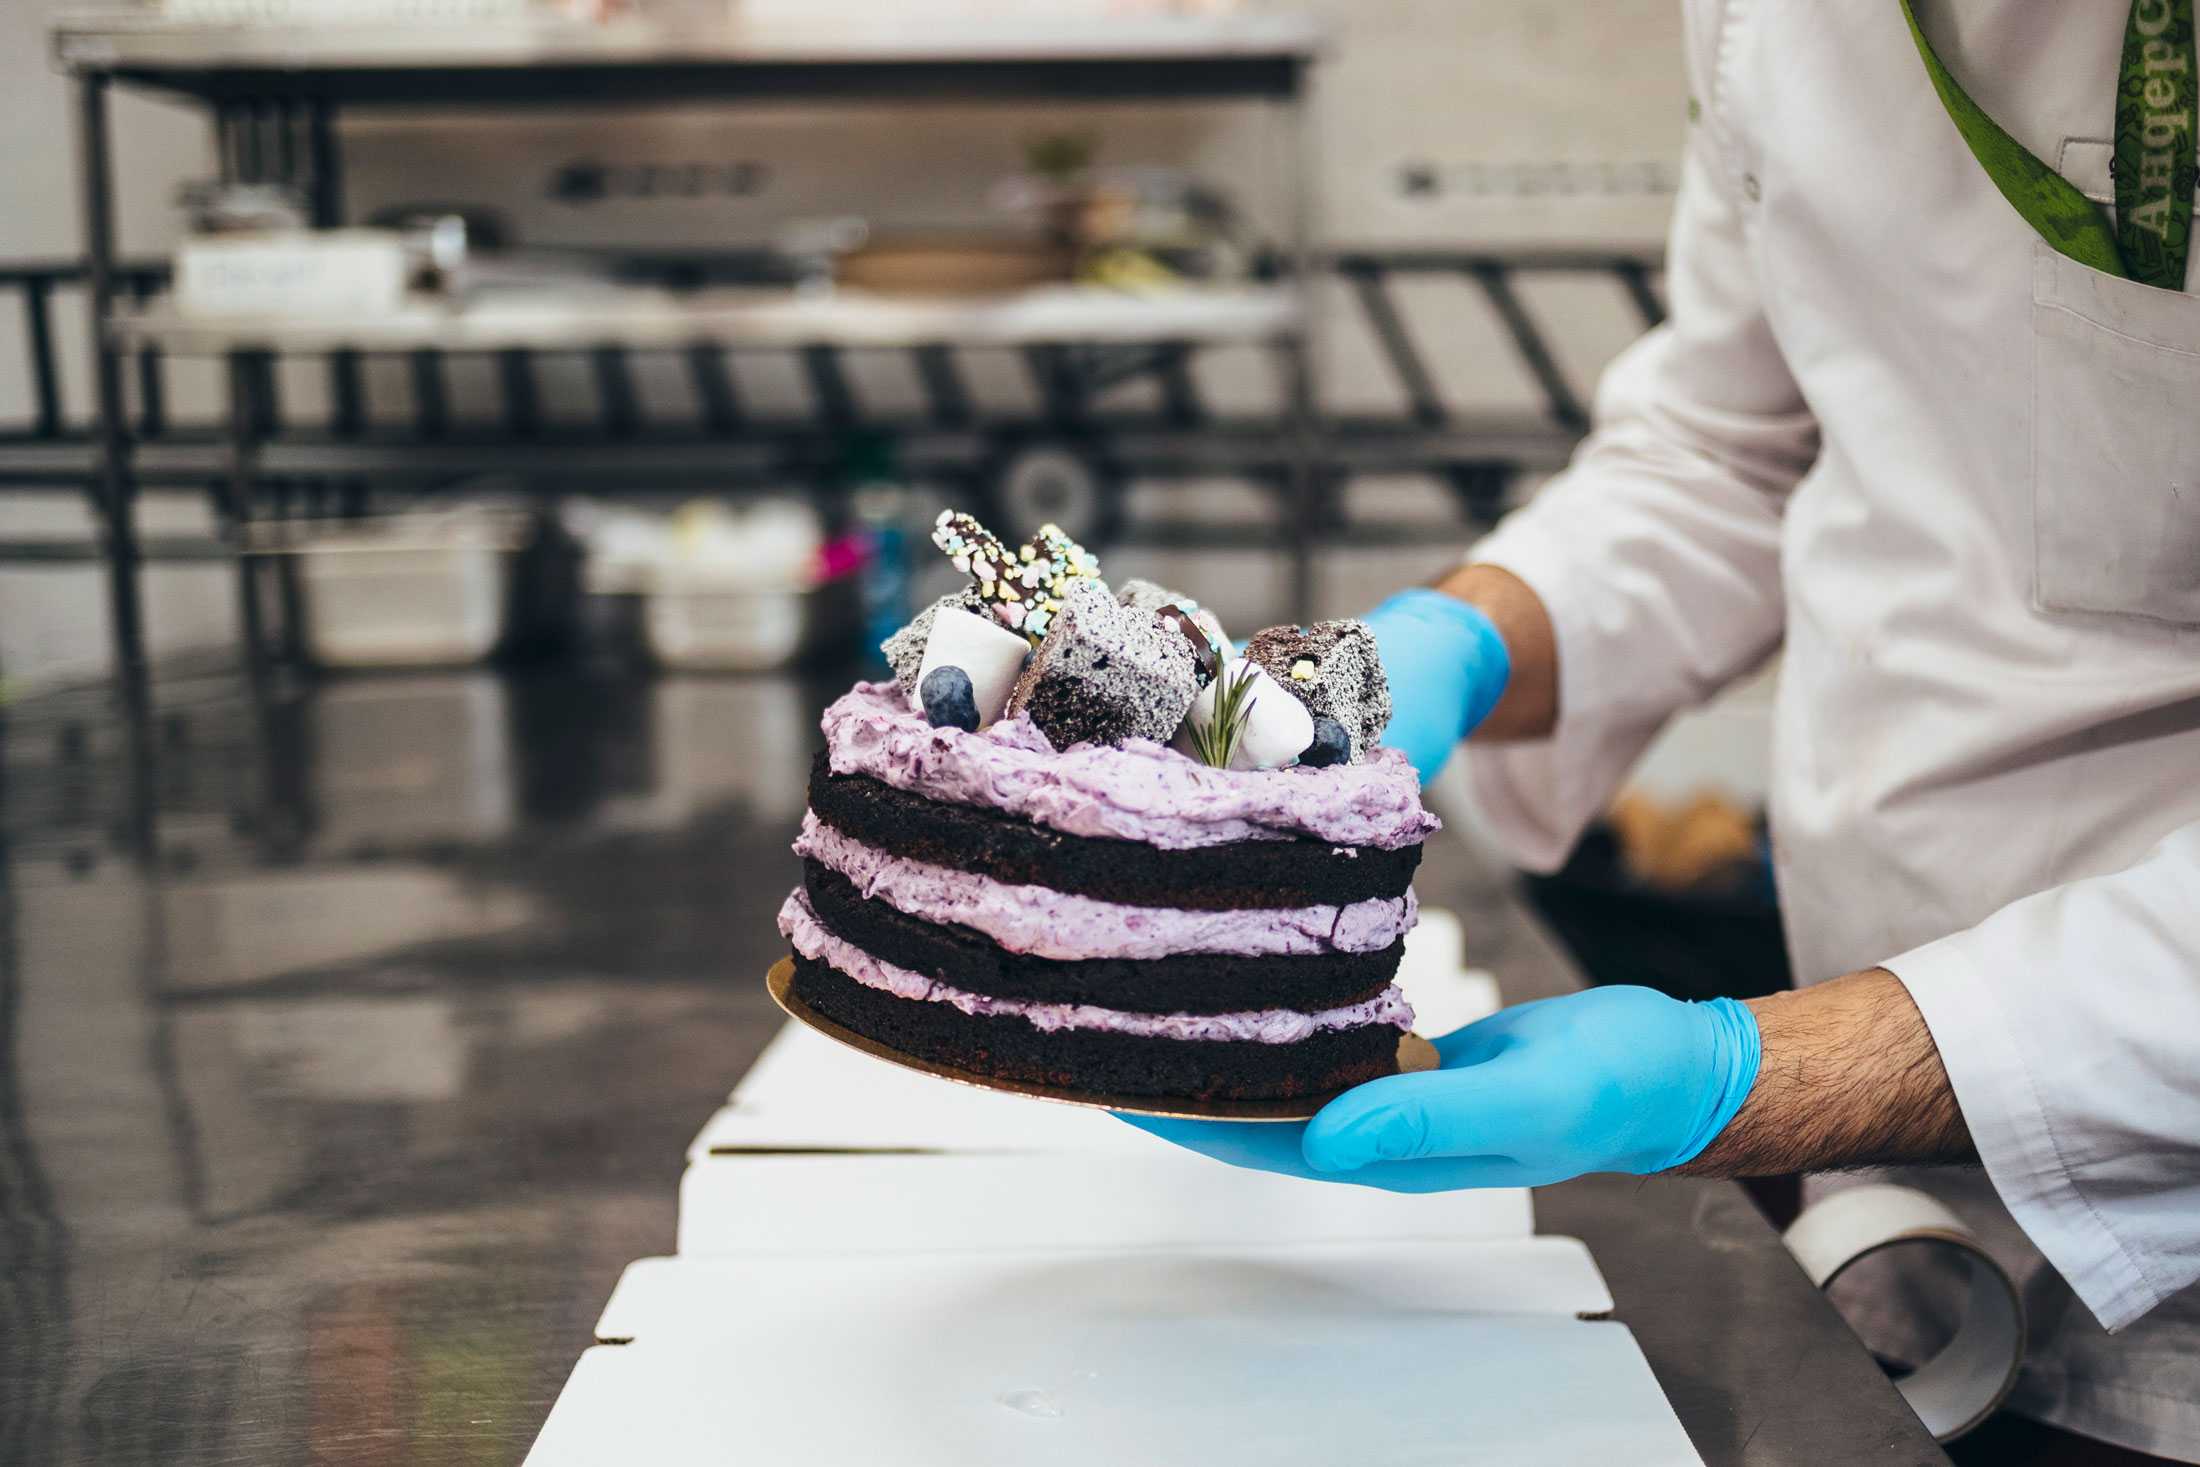 Бизнес по изготовлению тортов на дому: этапы создания, особенности, оборудование, реклама, бизнес-план